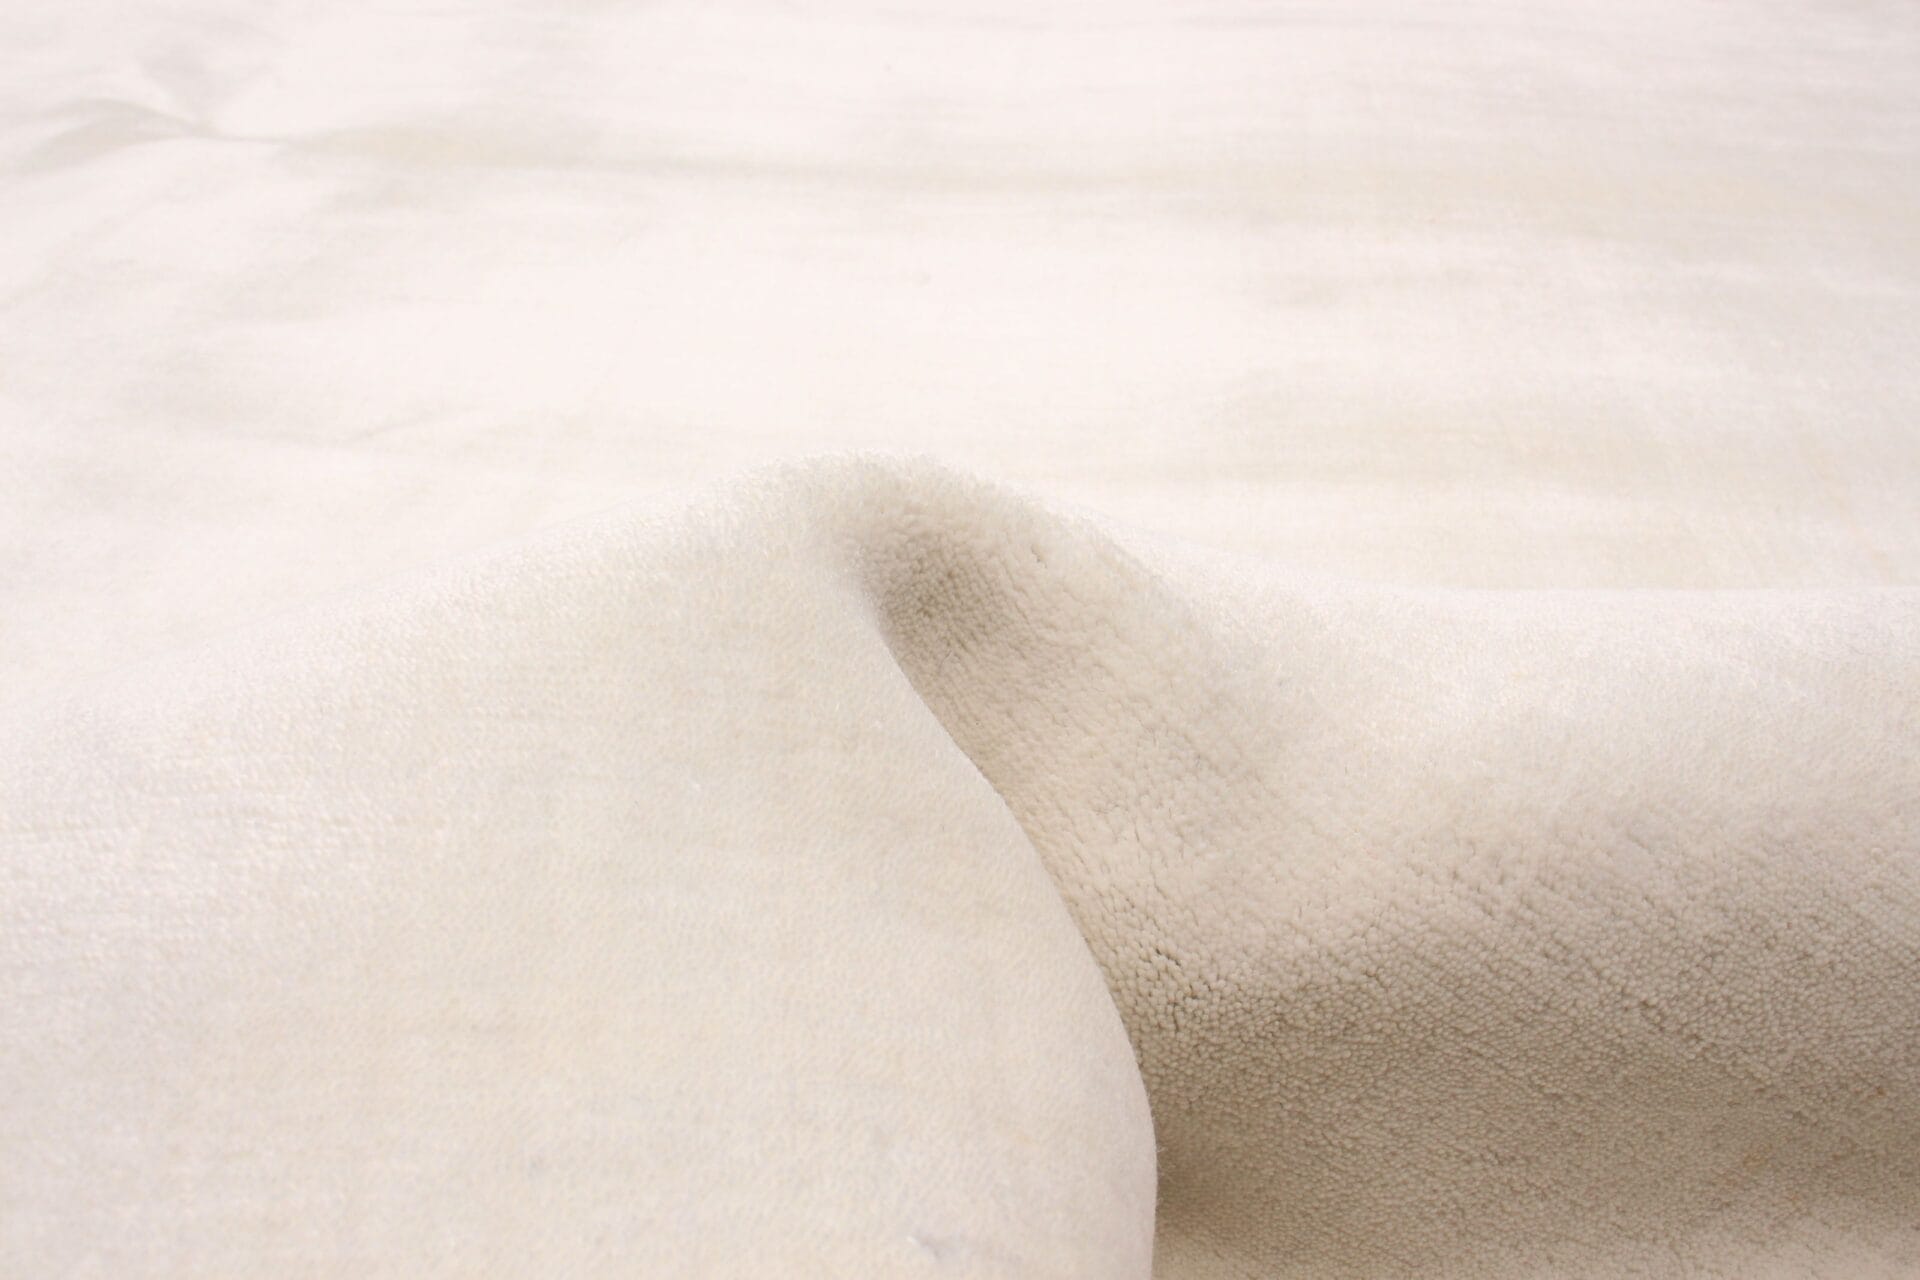 Een close-up afbeelding van een wit vloerkleed.